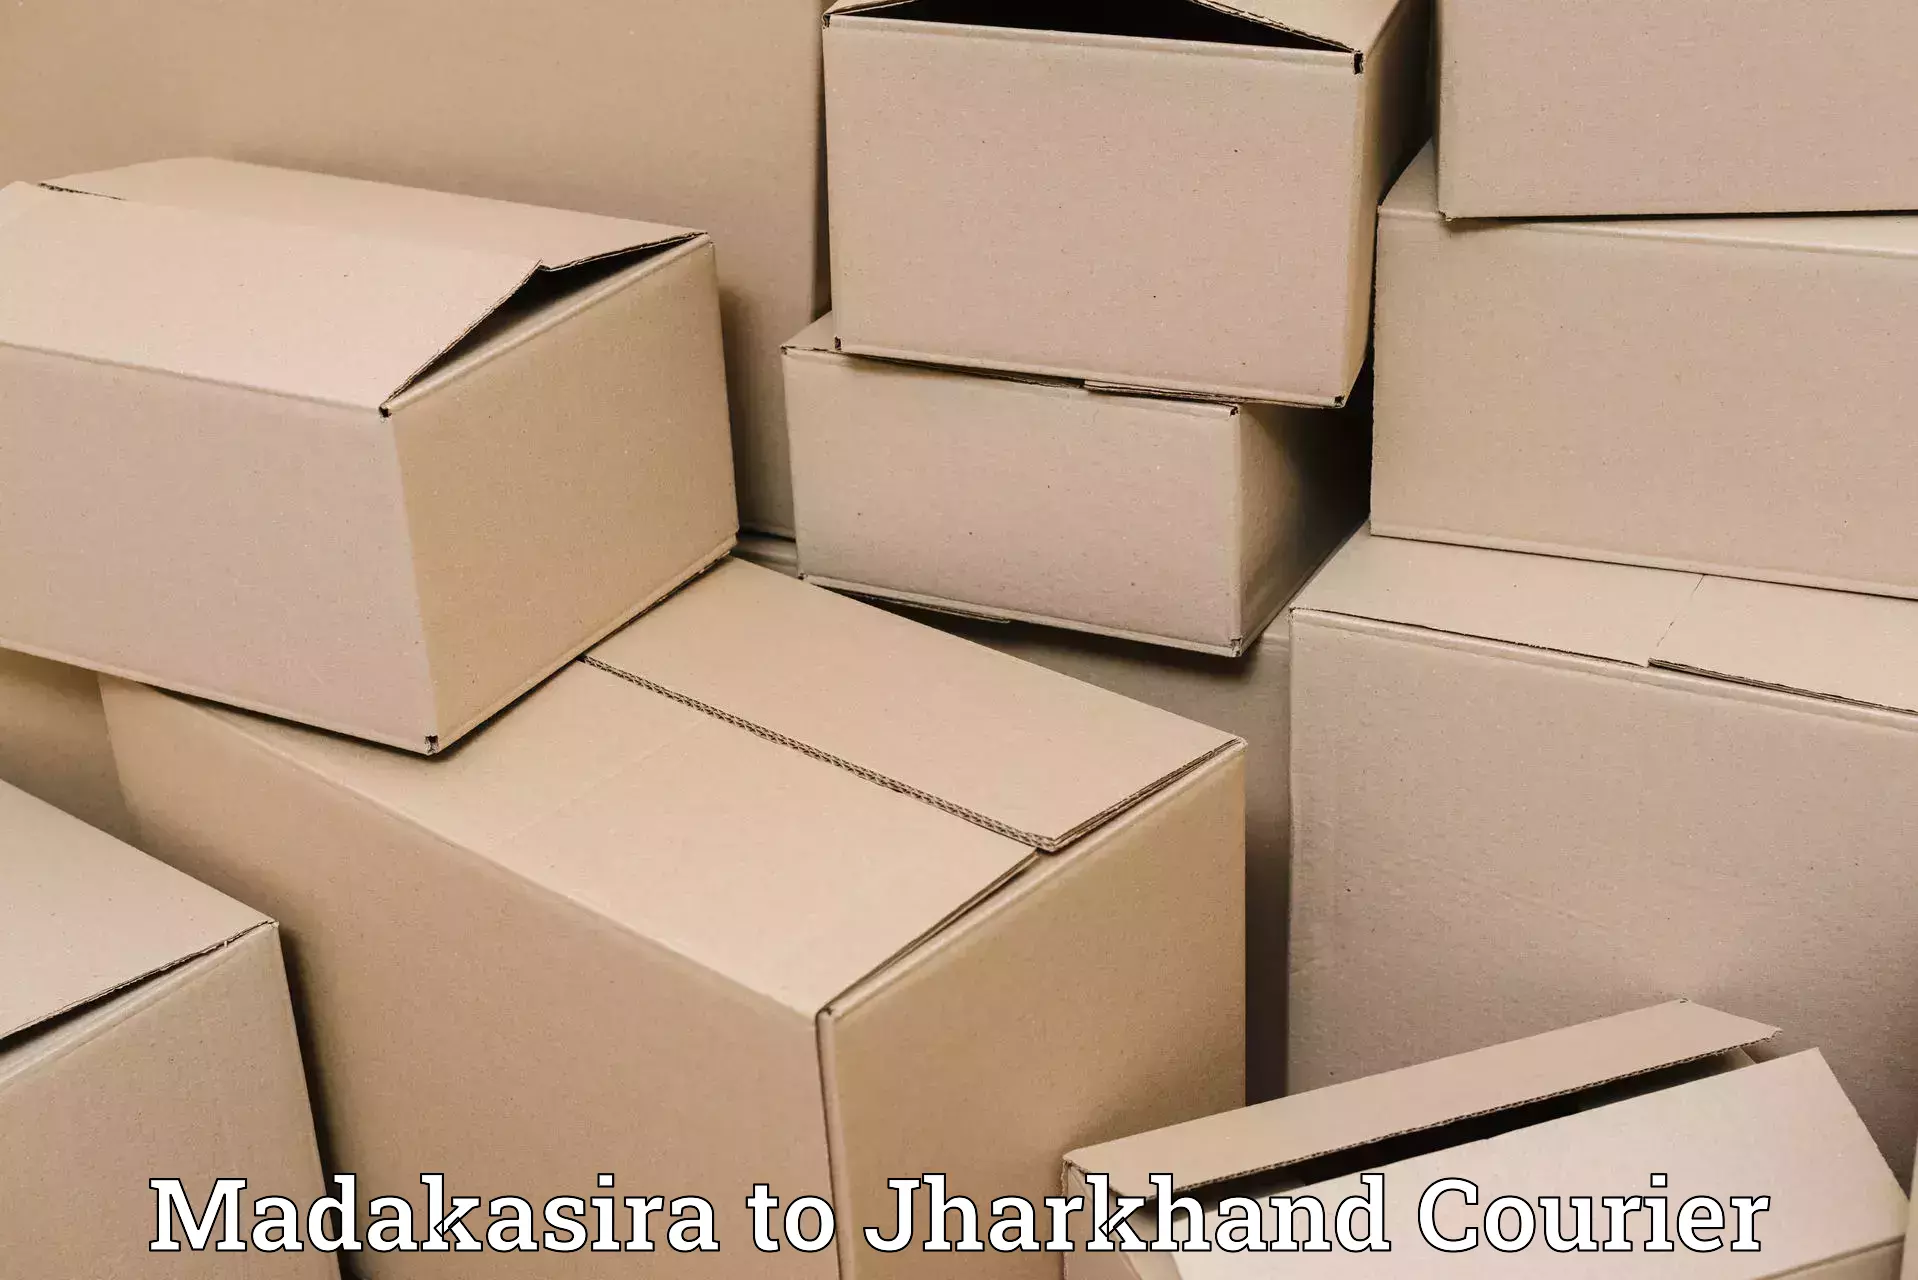 Expedited parcel delivery Madakasira to Sahibganj